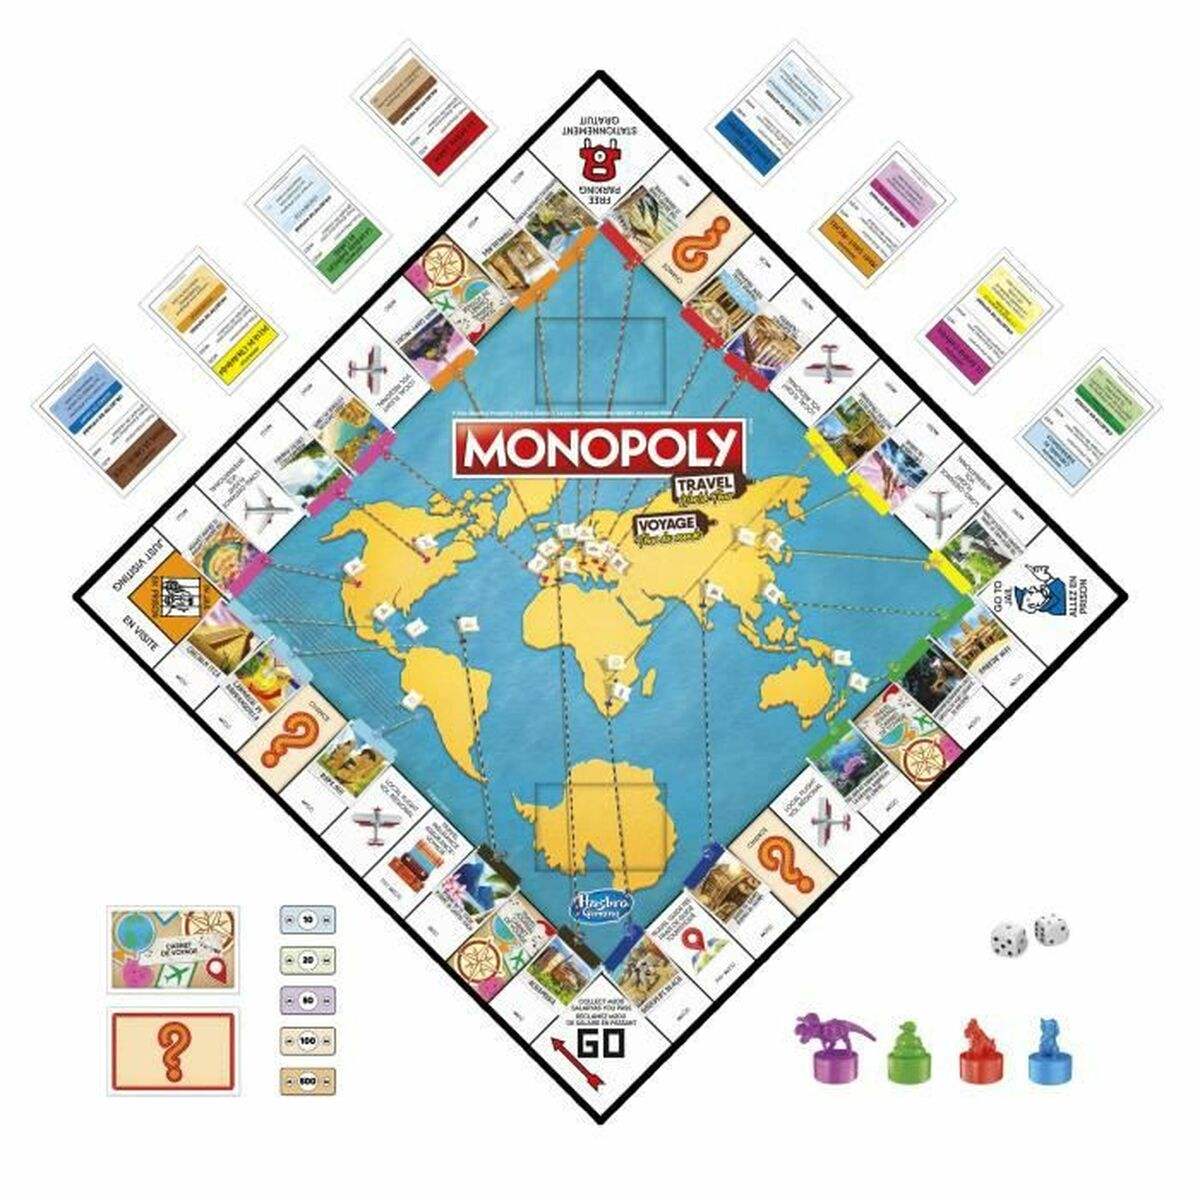 Tischspiel Monopoly Voyage Autour du monde (FR)